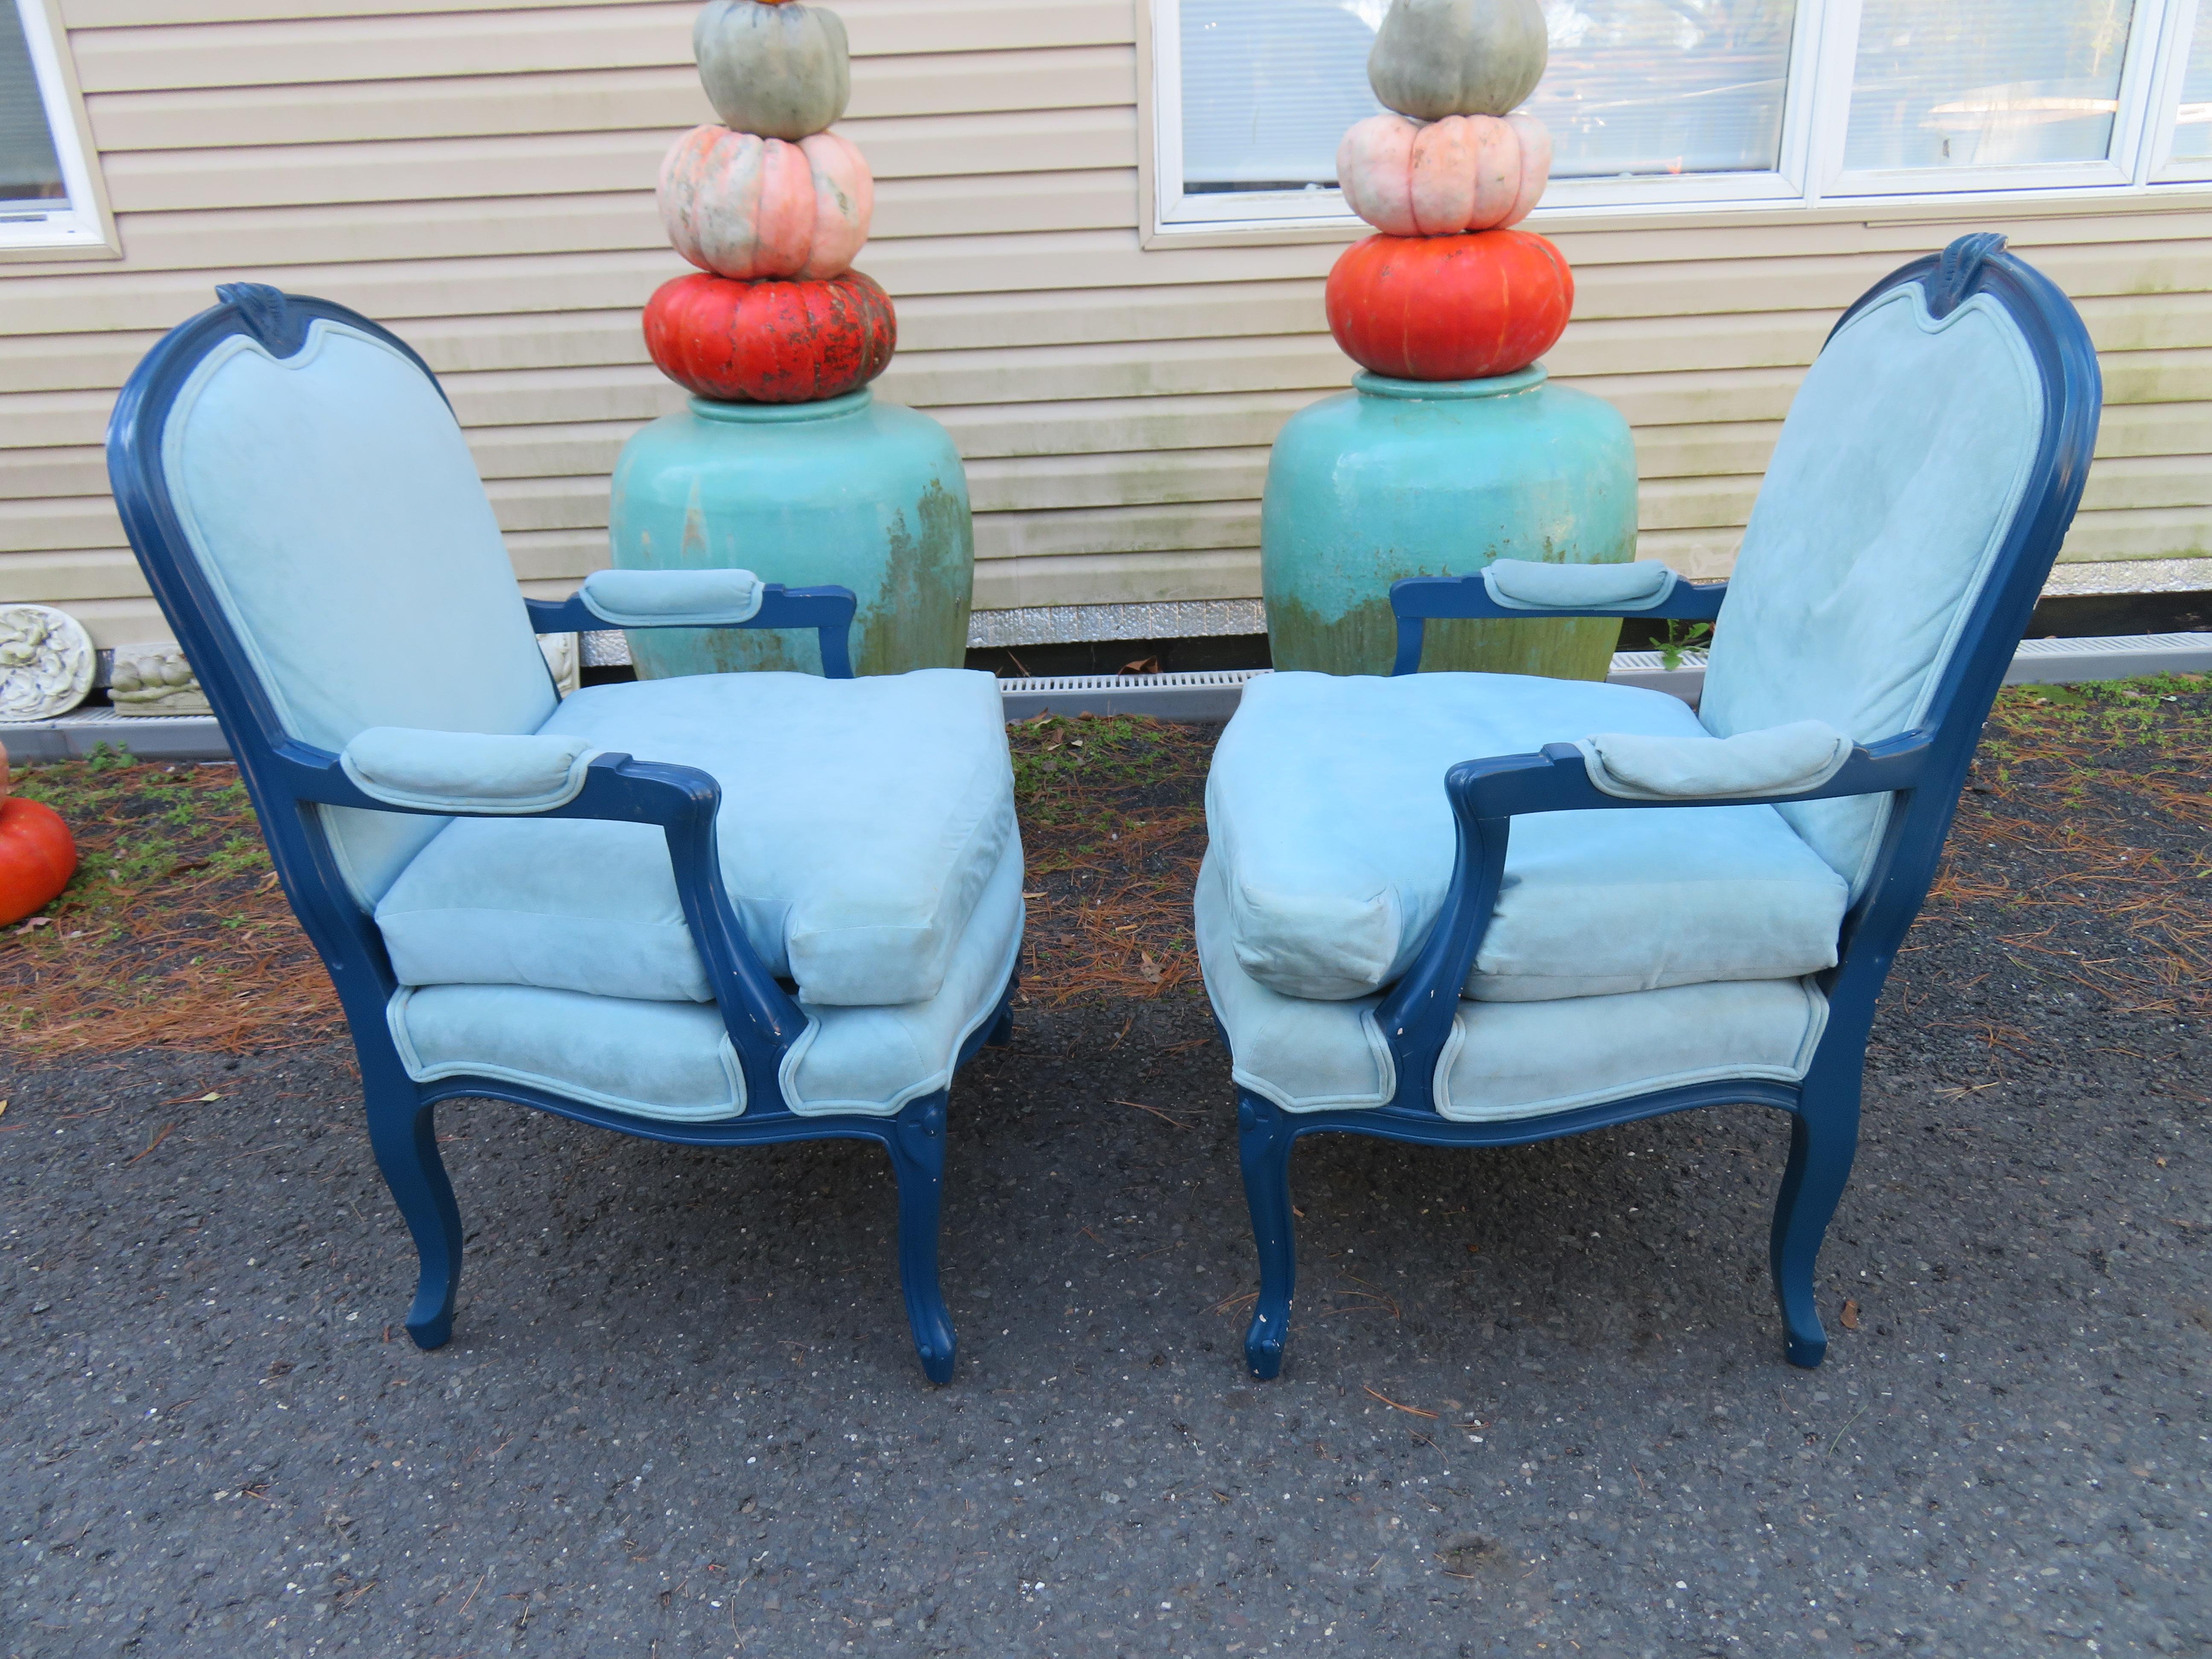 Superbe paire de chaises Fauteuil Louis XV Erwin-Lambeth, circa 60's. Nous adorons les cadres laqués bleu persan d'origine et le revêtement en ultra-suède bleu layette. Les chaises mesurent 38 